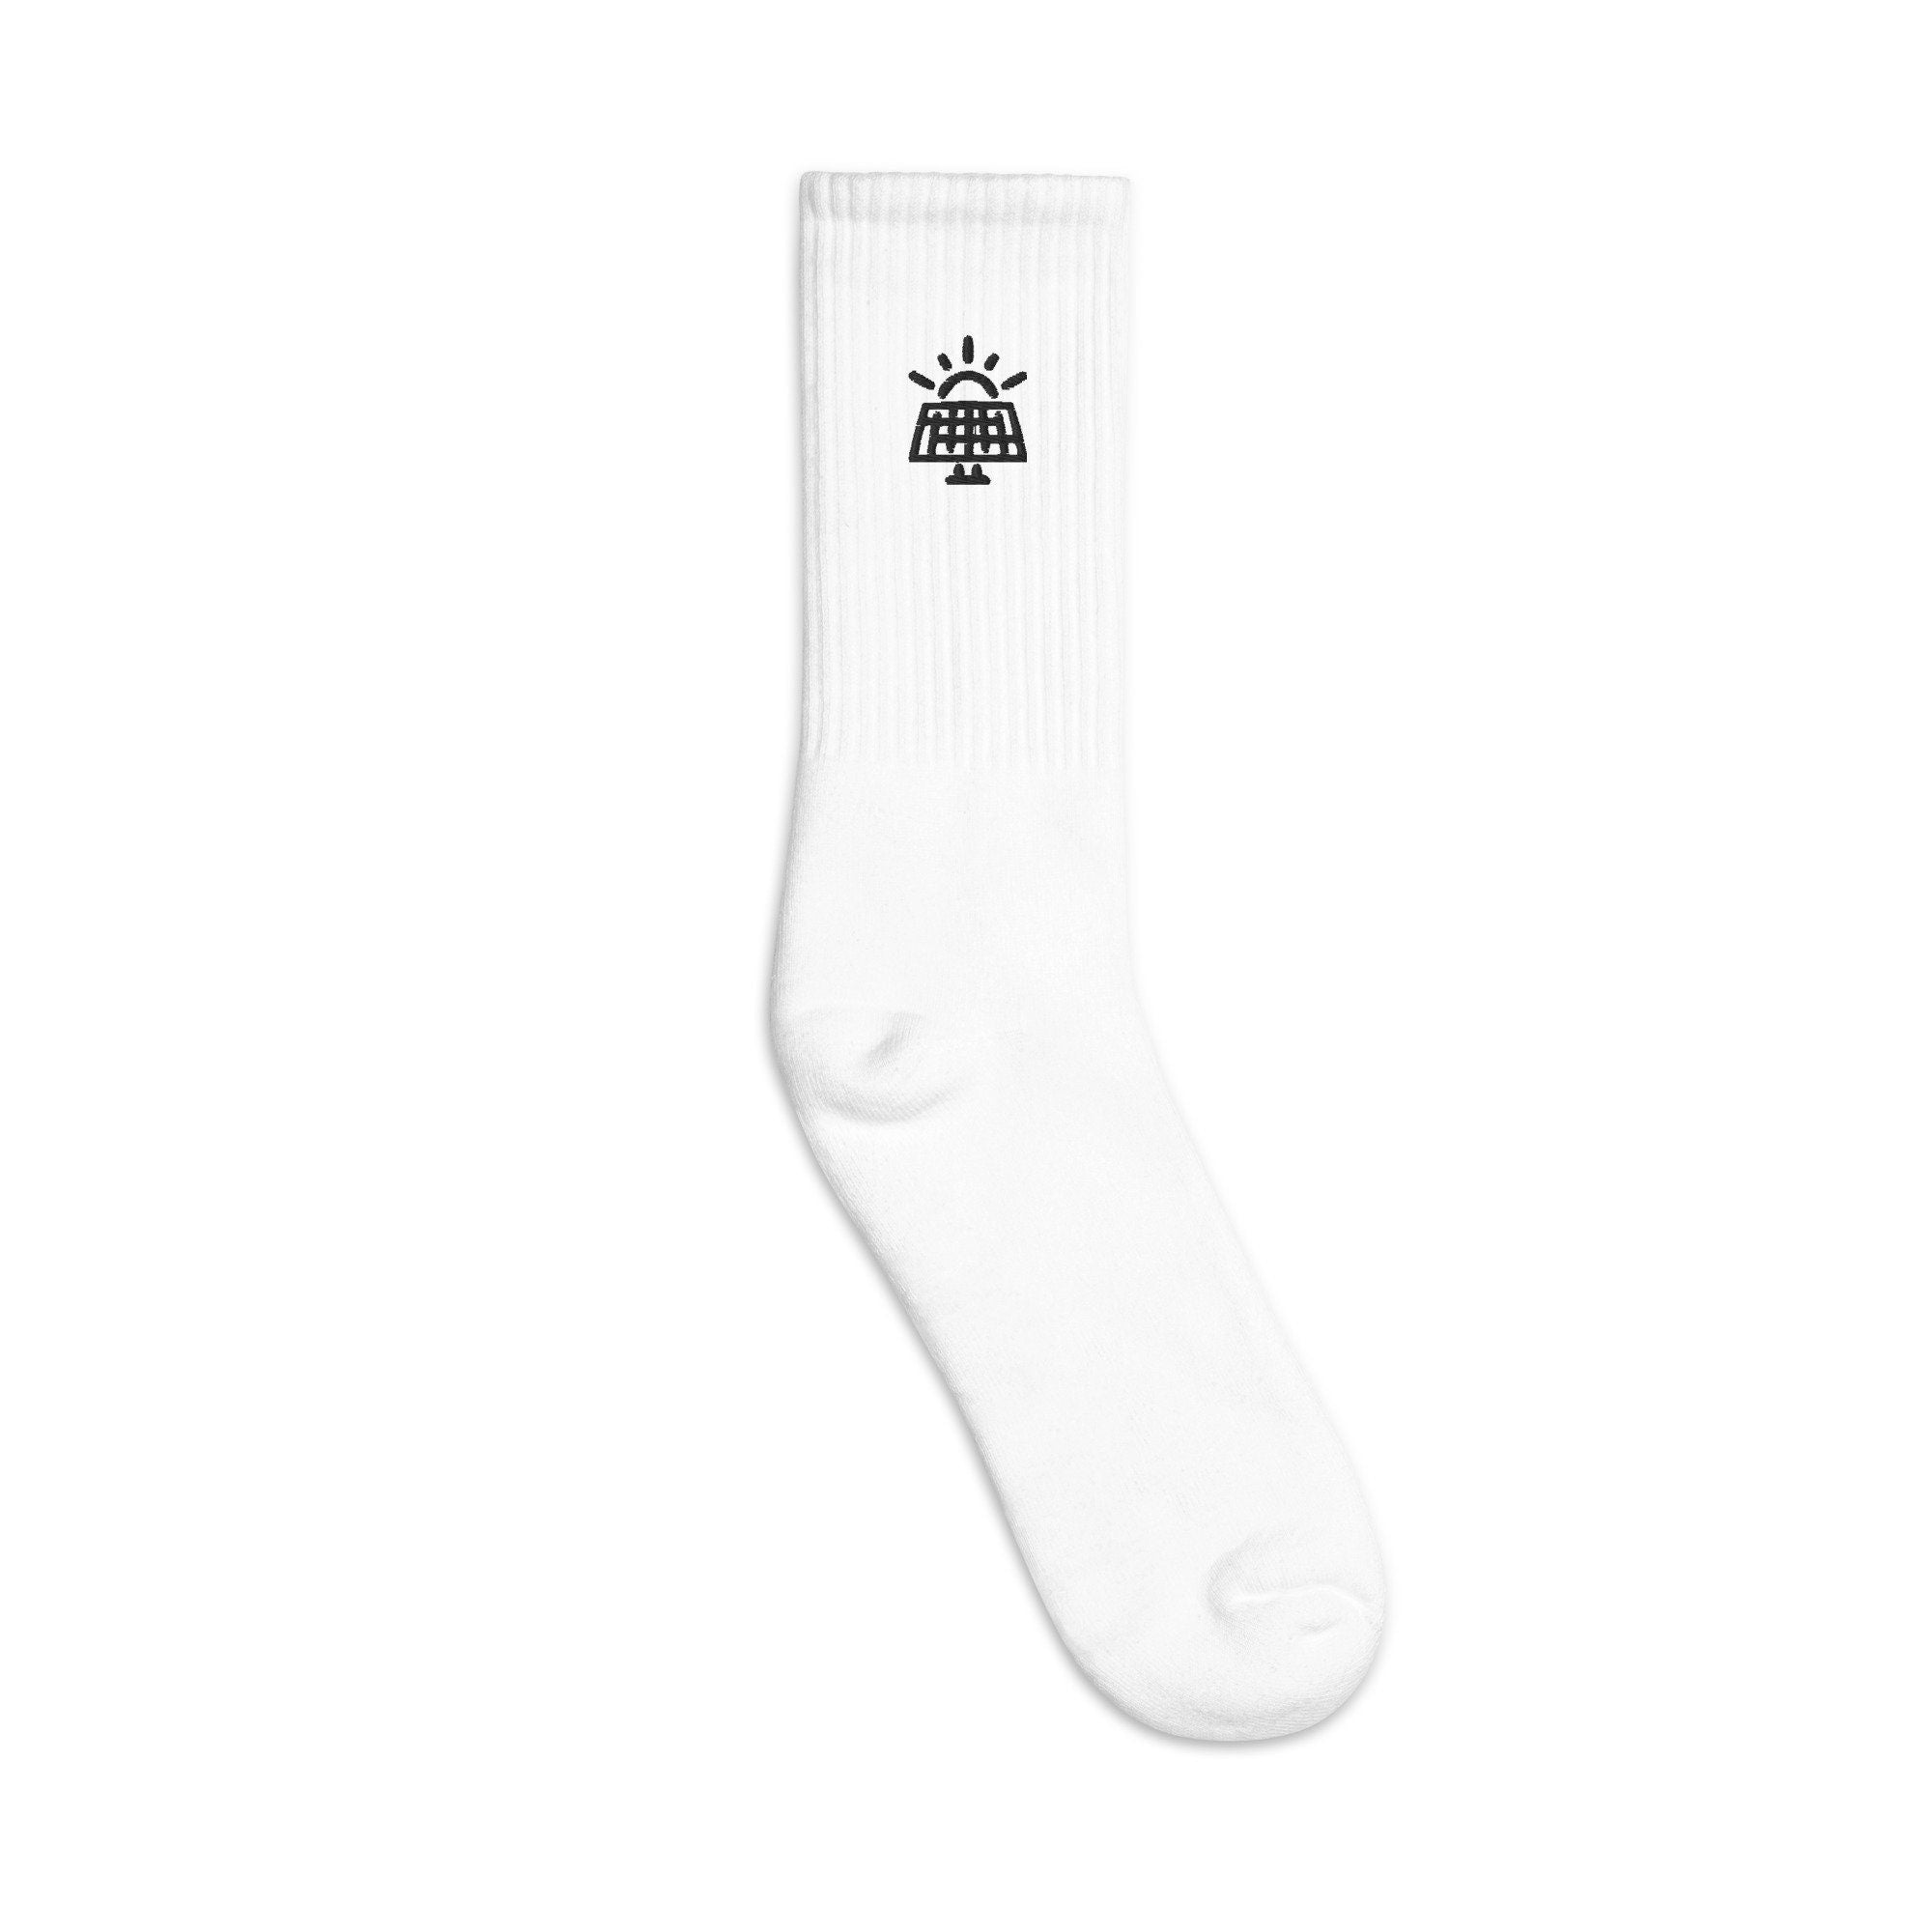 Solar Power Embroidered Socks, Premium Embroidered Socks, Long Socks Gift - Multiple Colors